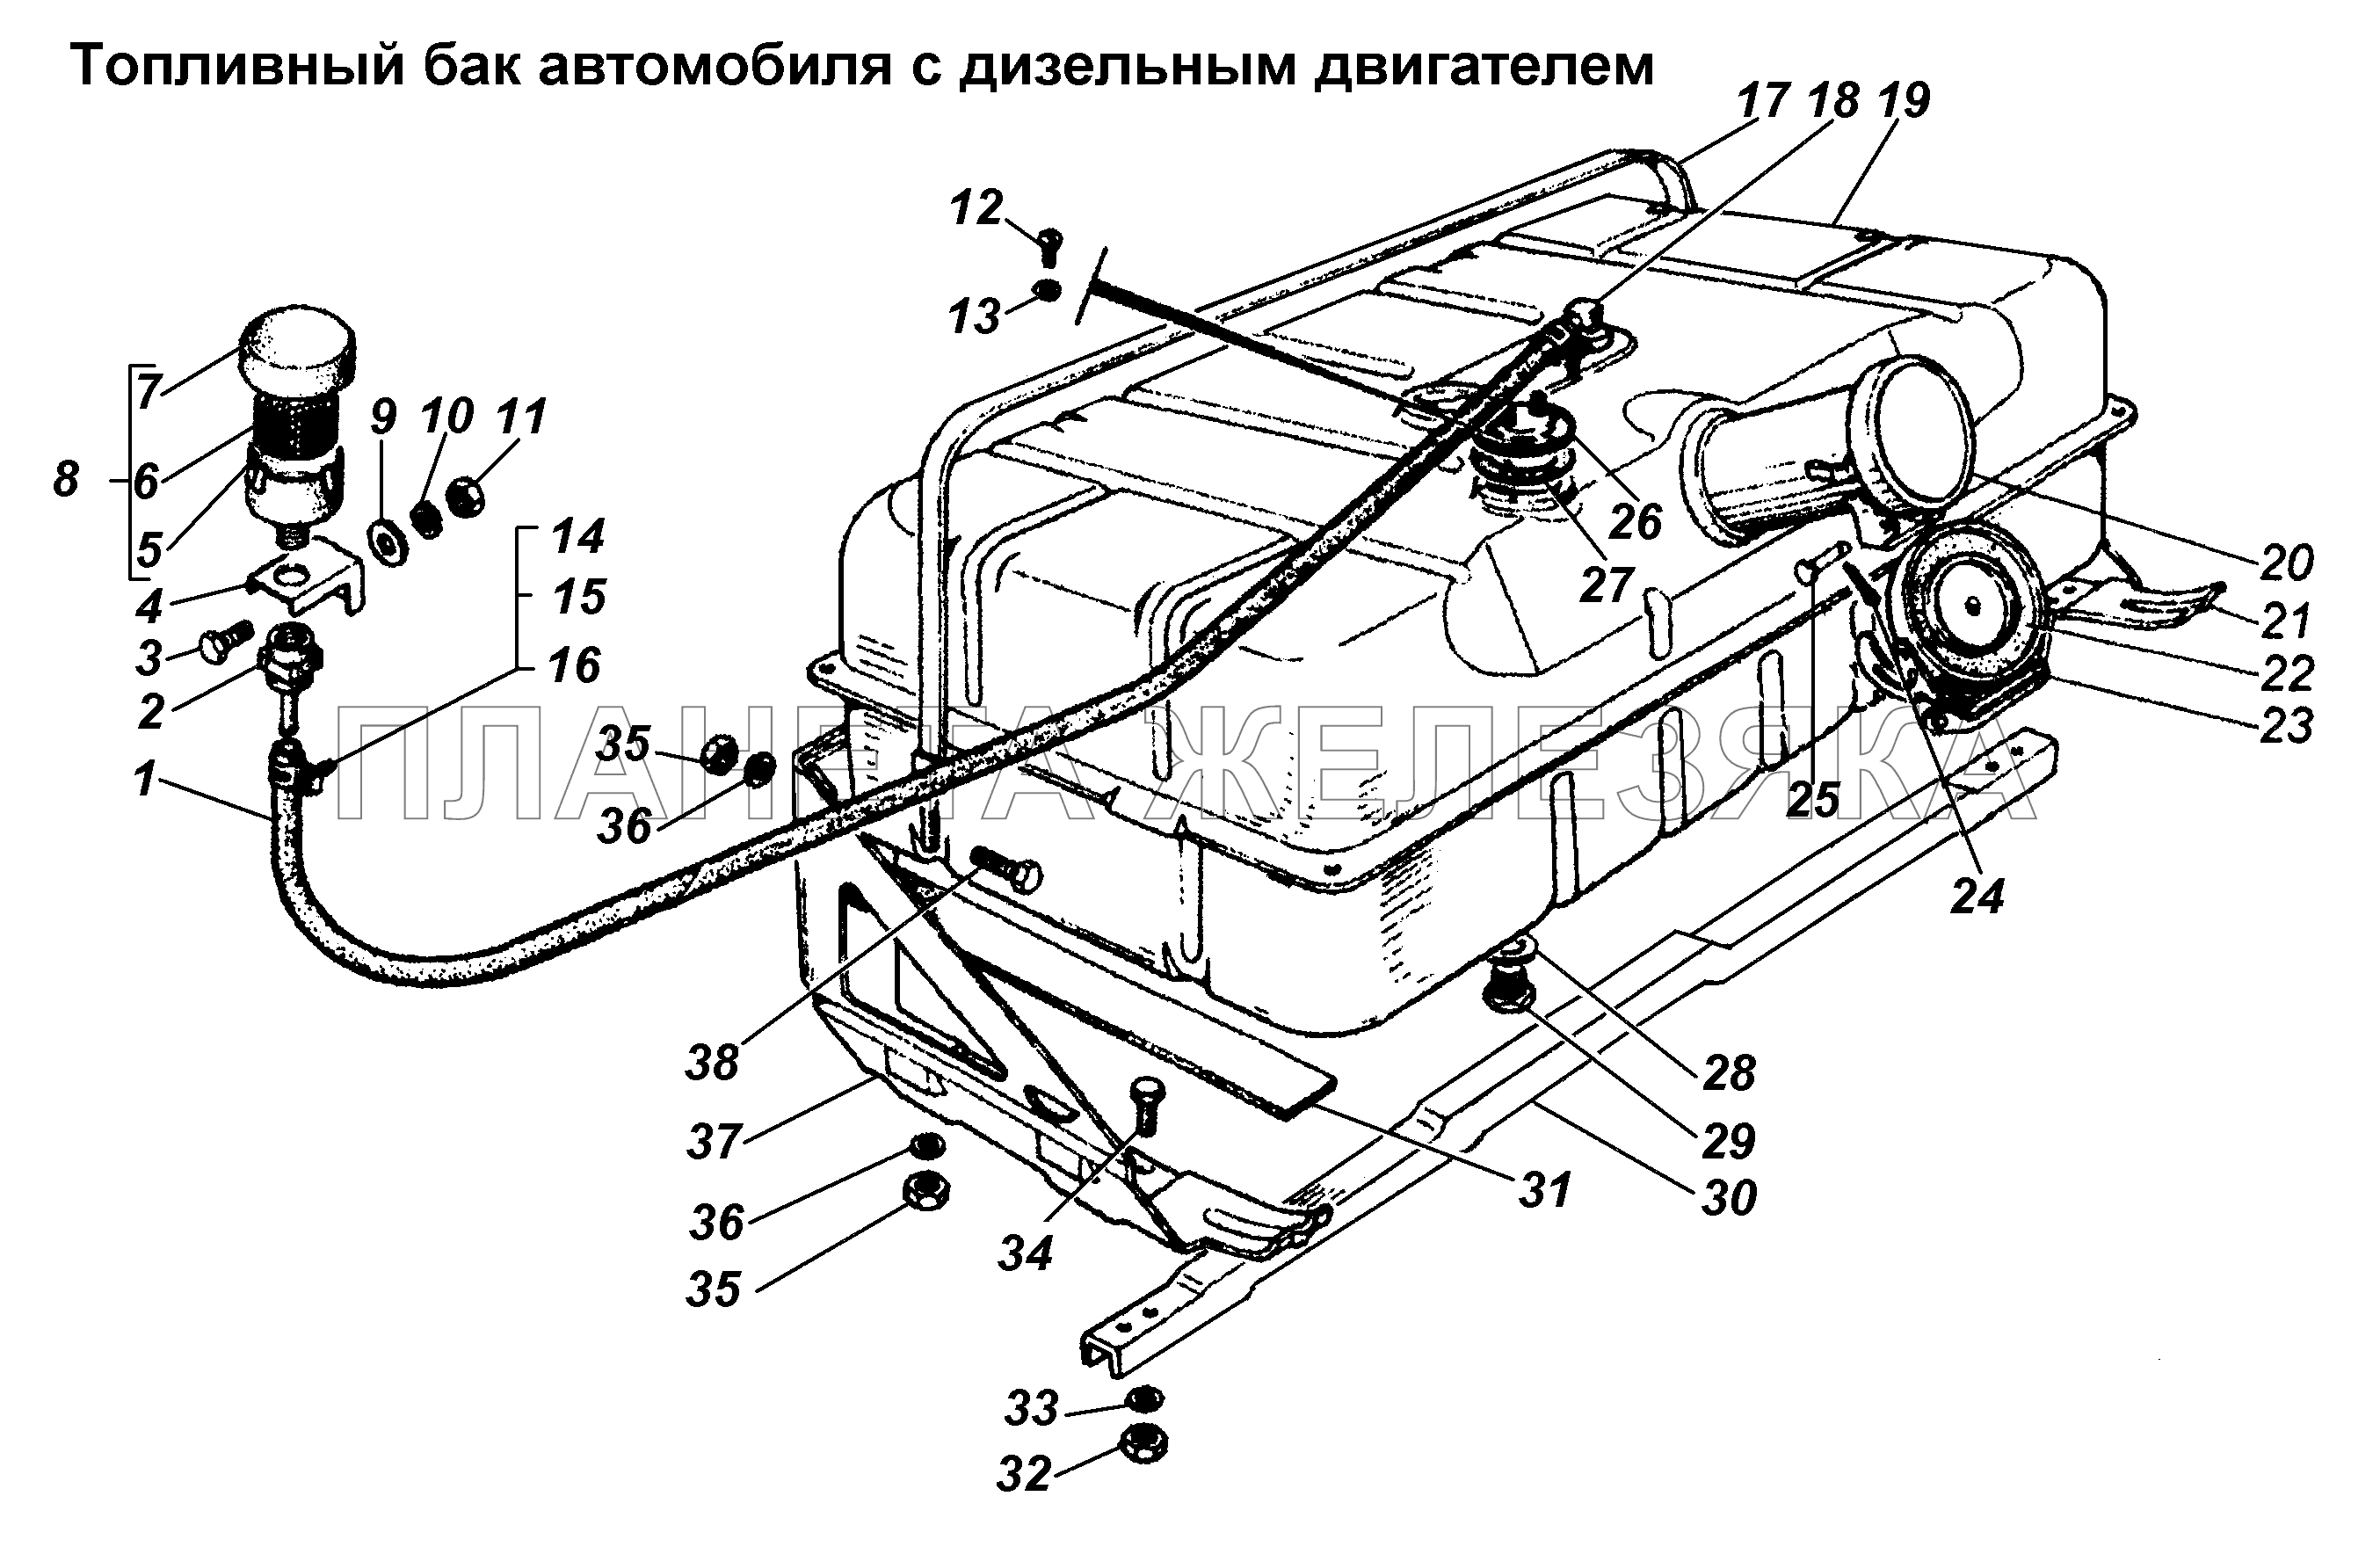 Топливный баки автомобиля с дизельным двигателем ГАЗ-3308